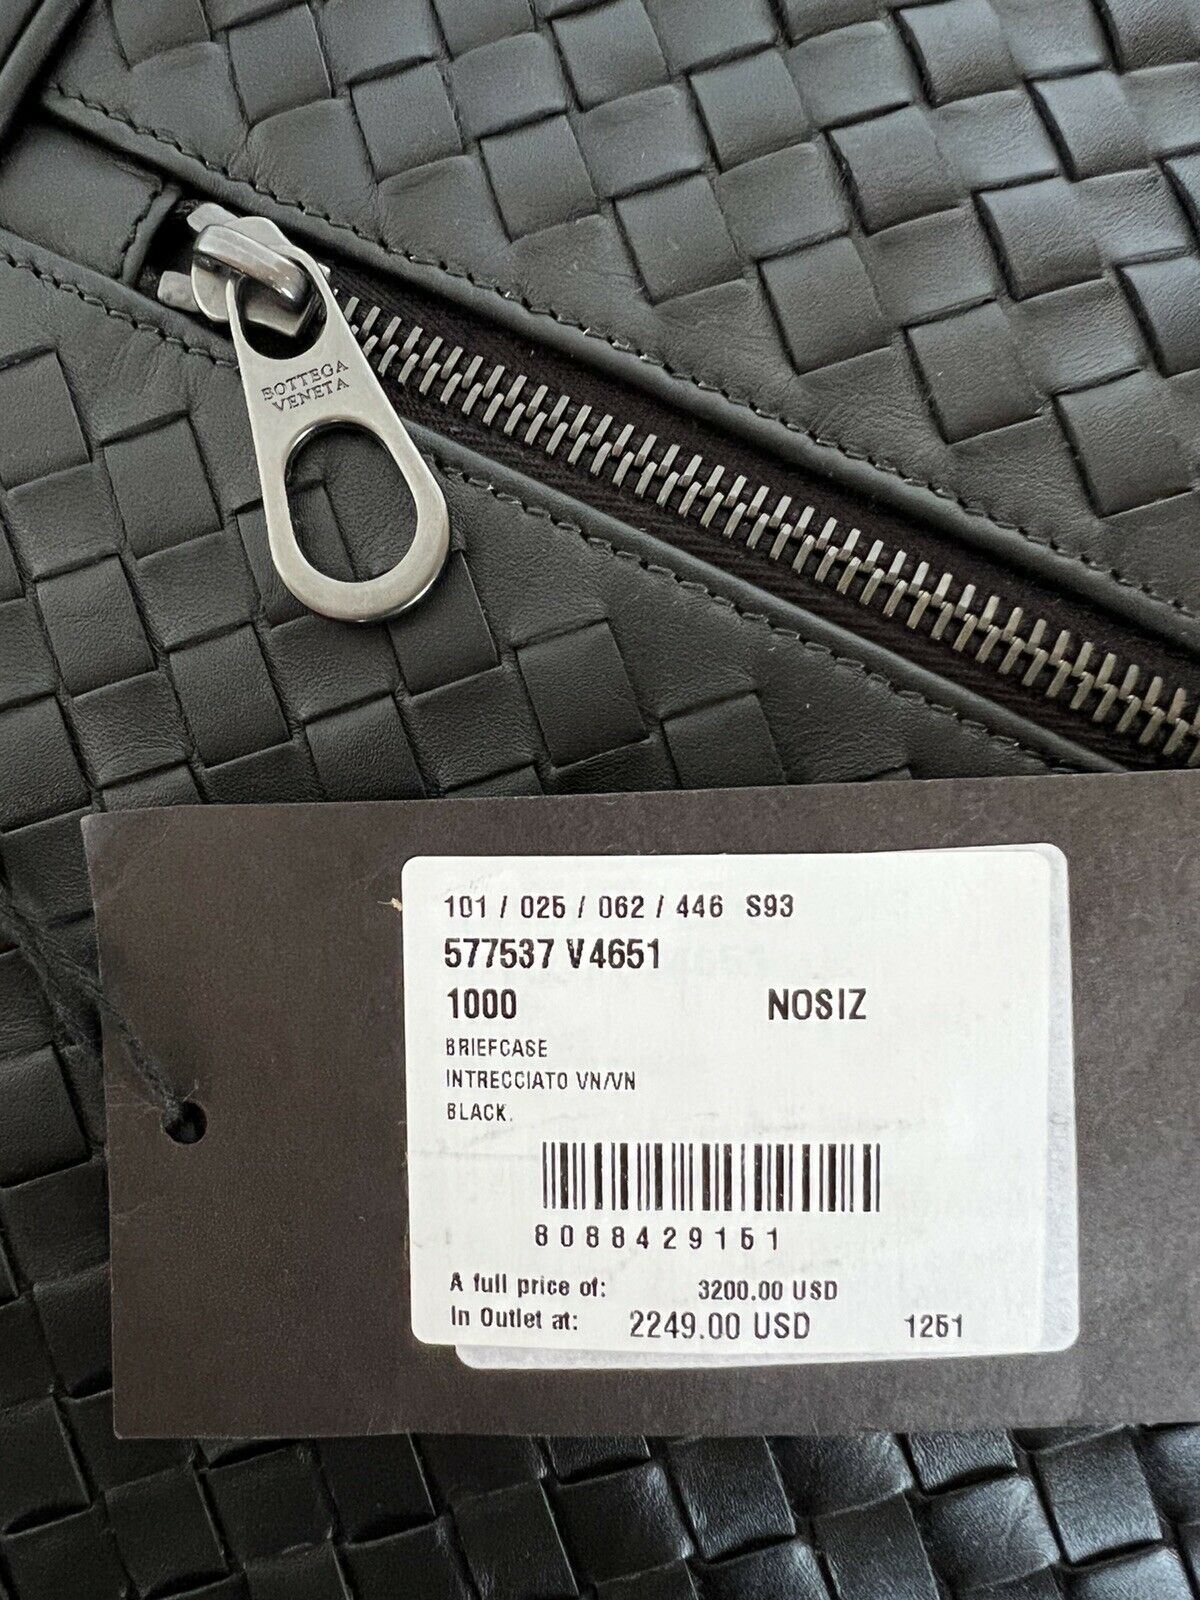 NWT $3200 Черный кожаный портфель Intrecciato Bottega Veneta Италия 577537 